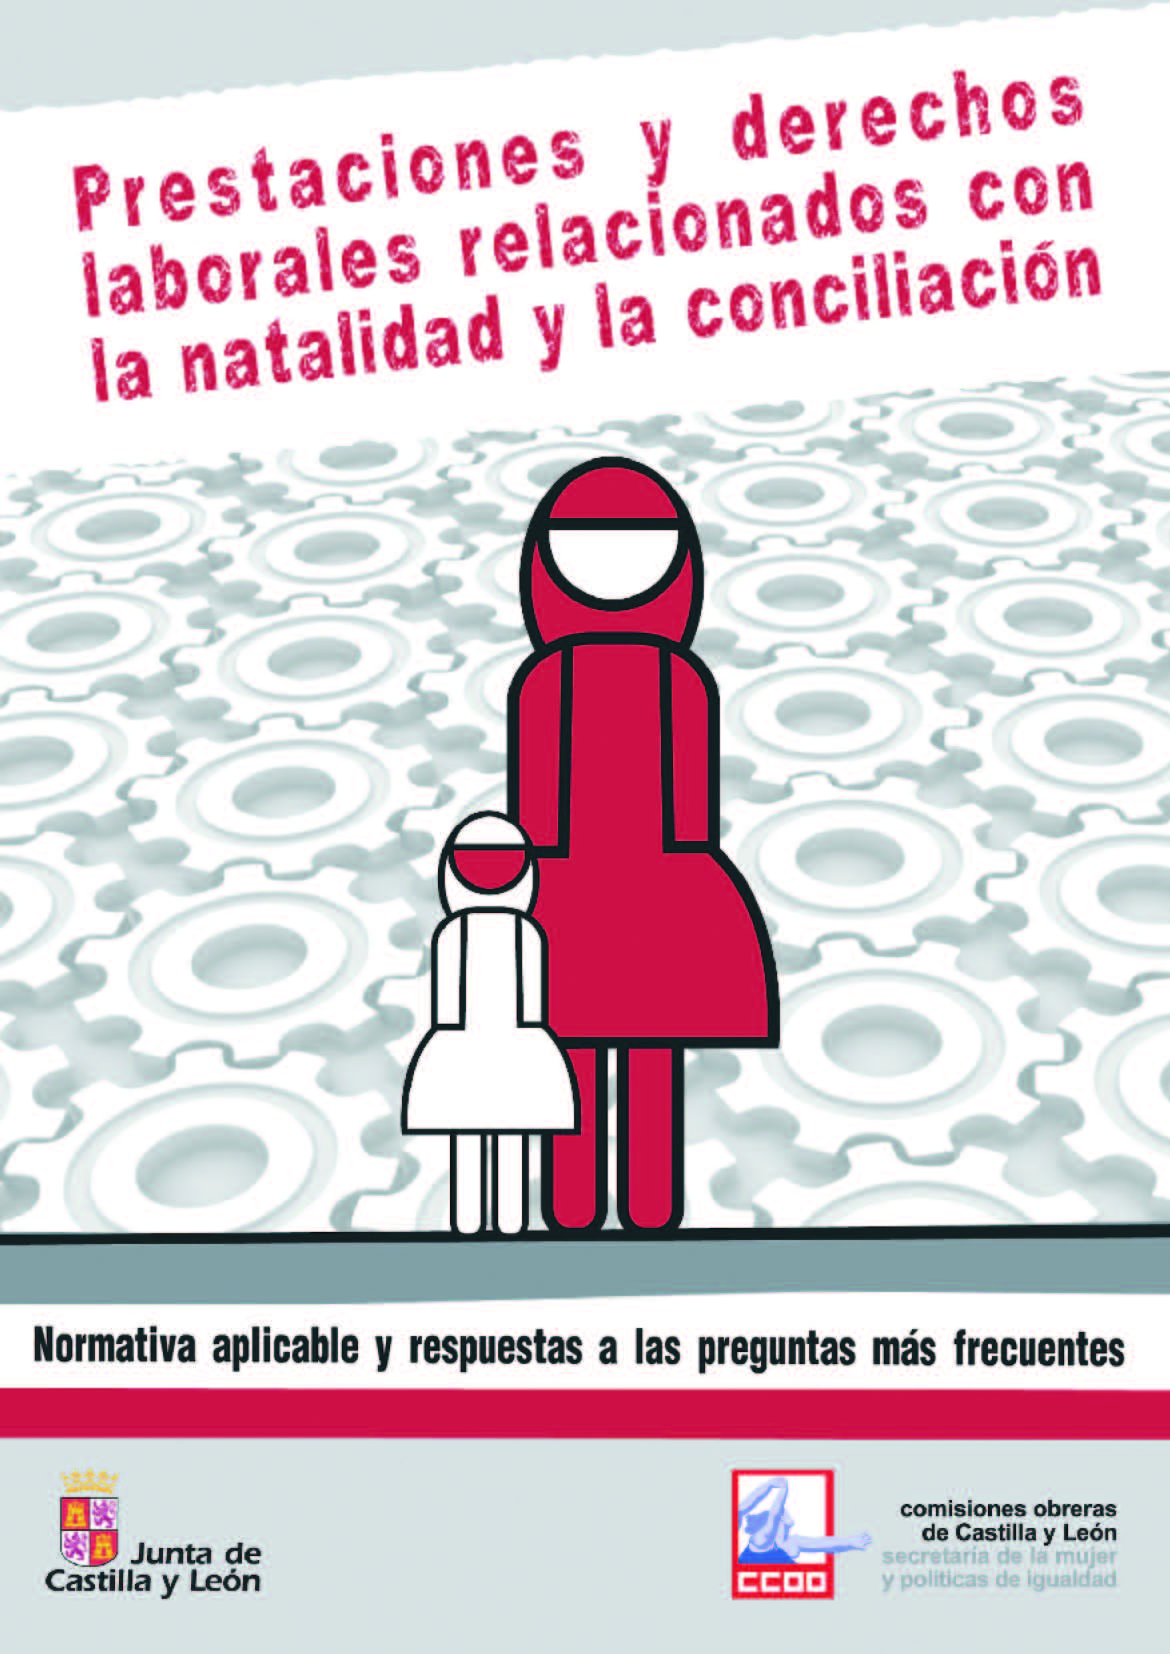 Prestaciones y derechos laborales relacionados con la natalidad y la conciliacin